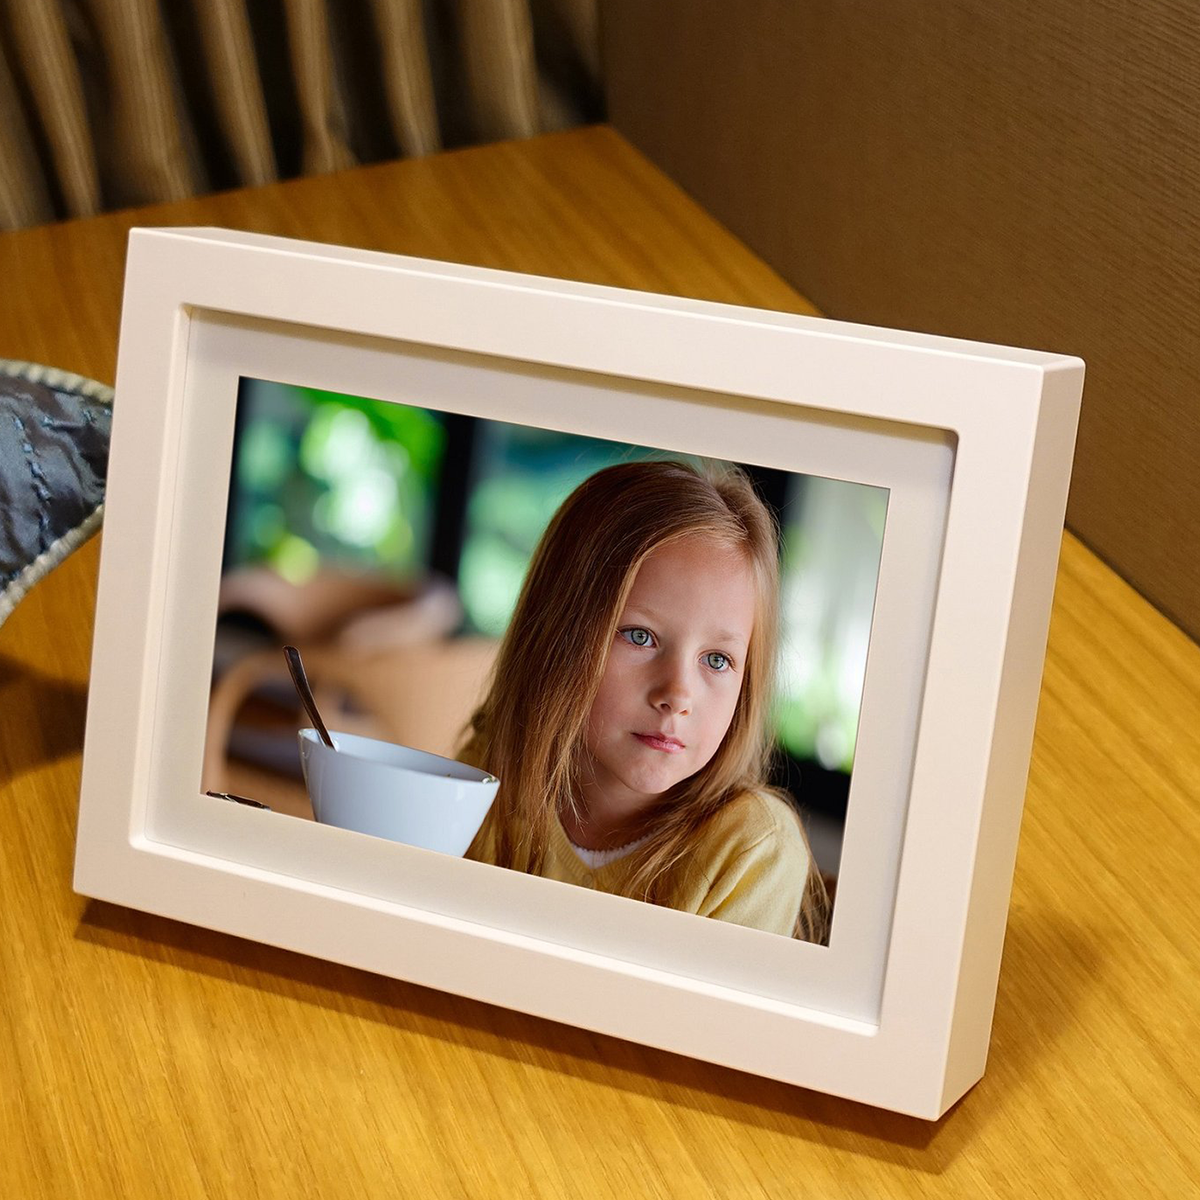 PhotoSpring 8 (White) - 8" Wi-Fi Digital Photo Frame & Album - Touchscreen, Battery, 1280x800 IPS Display